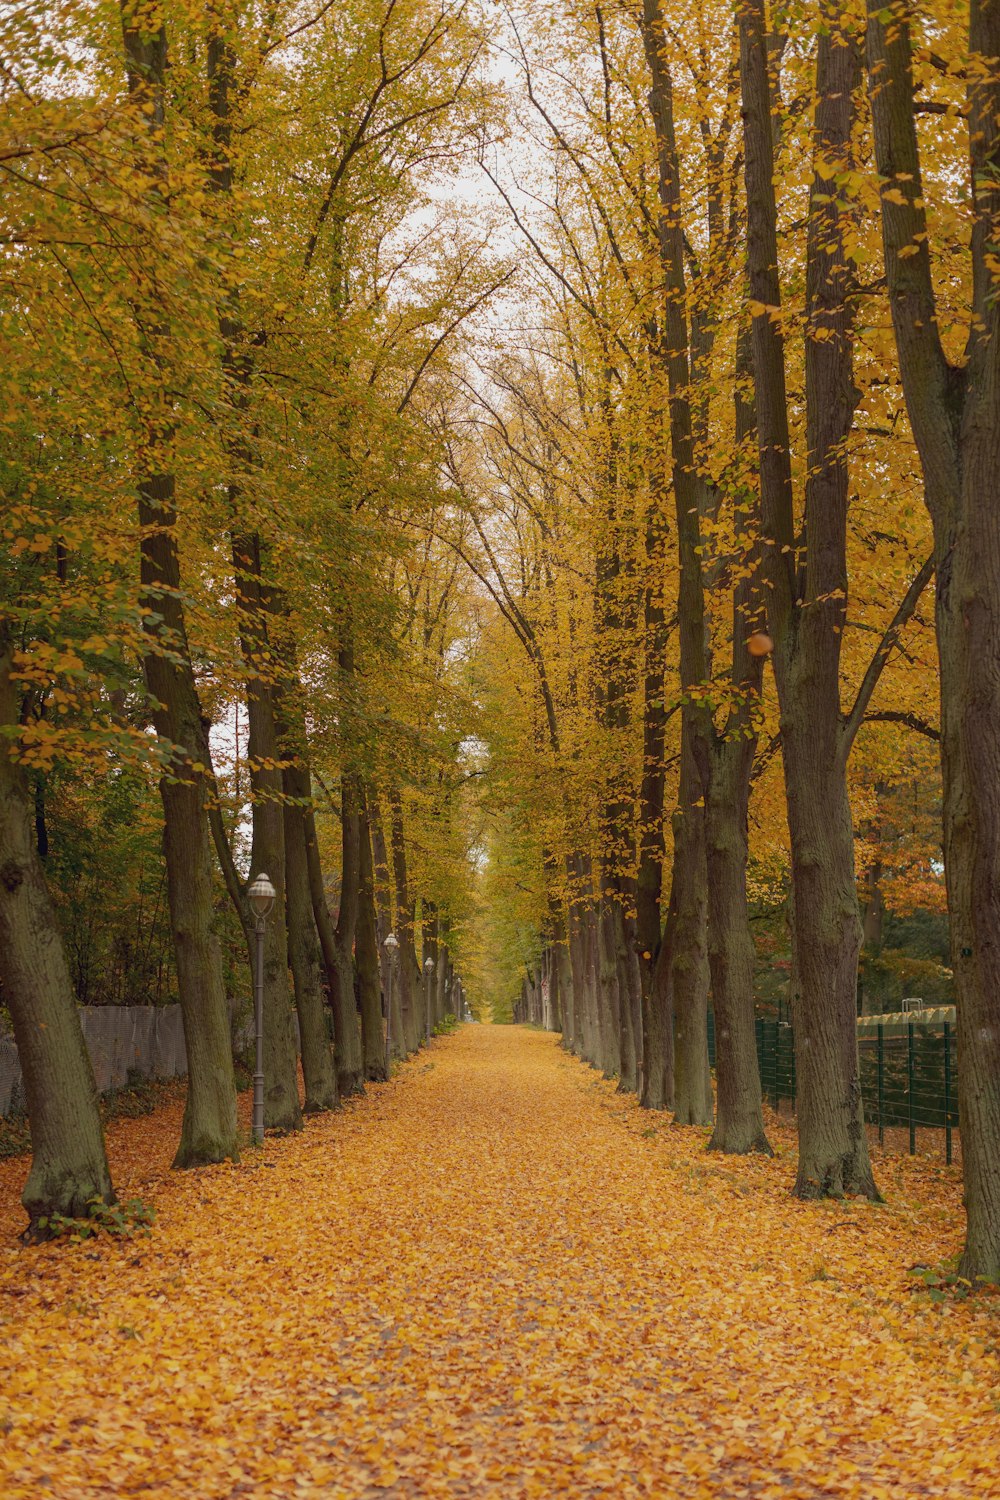 Un camino arbolado con hojas amarillas en el suelo